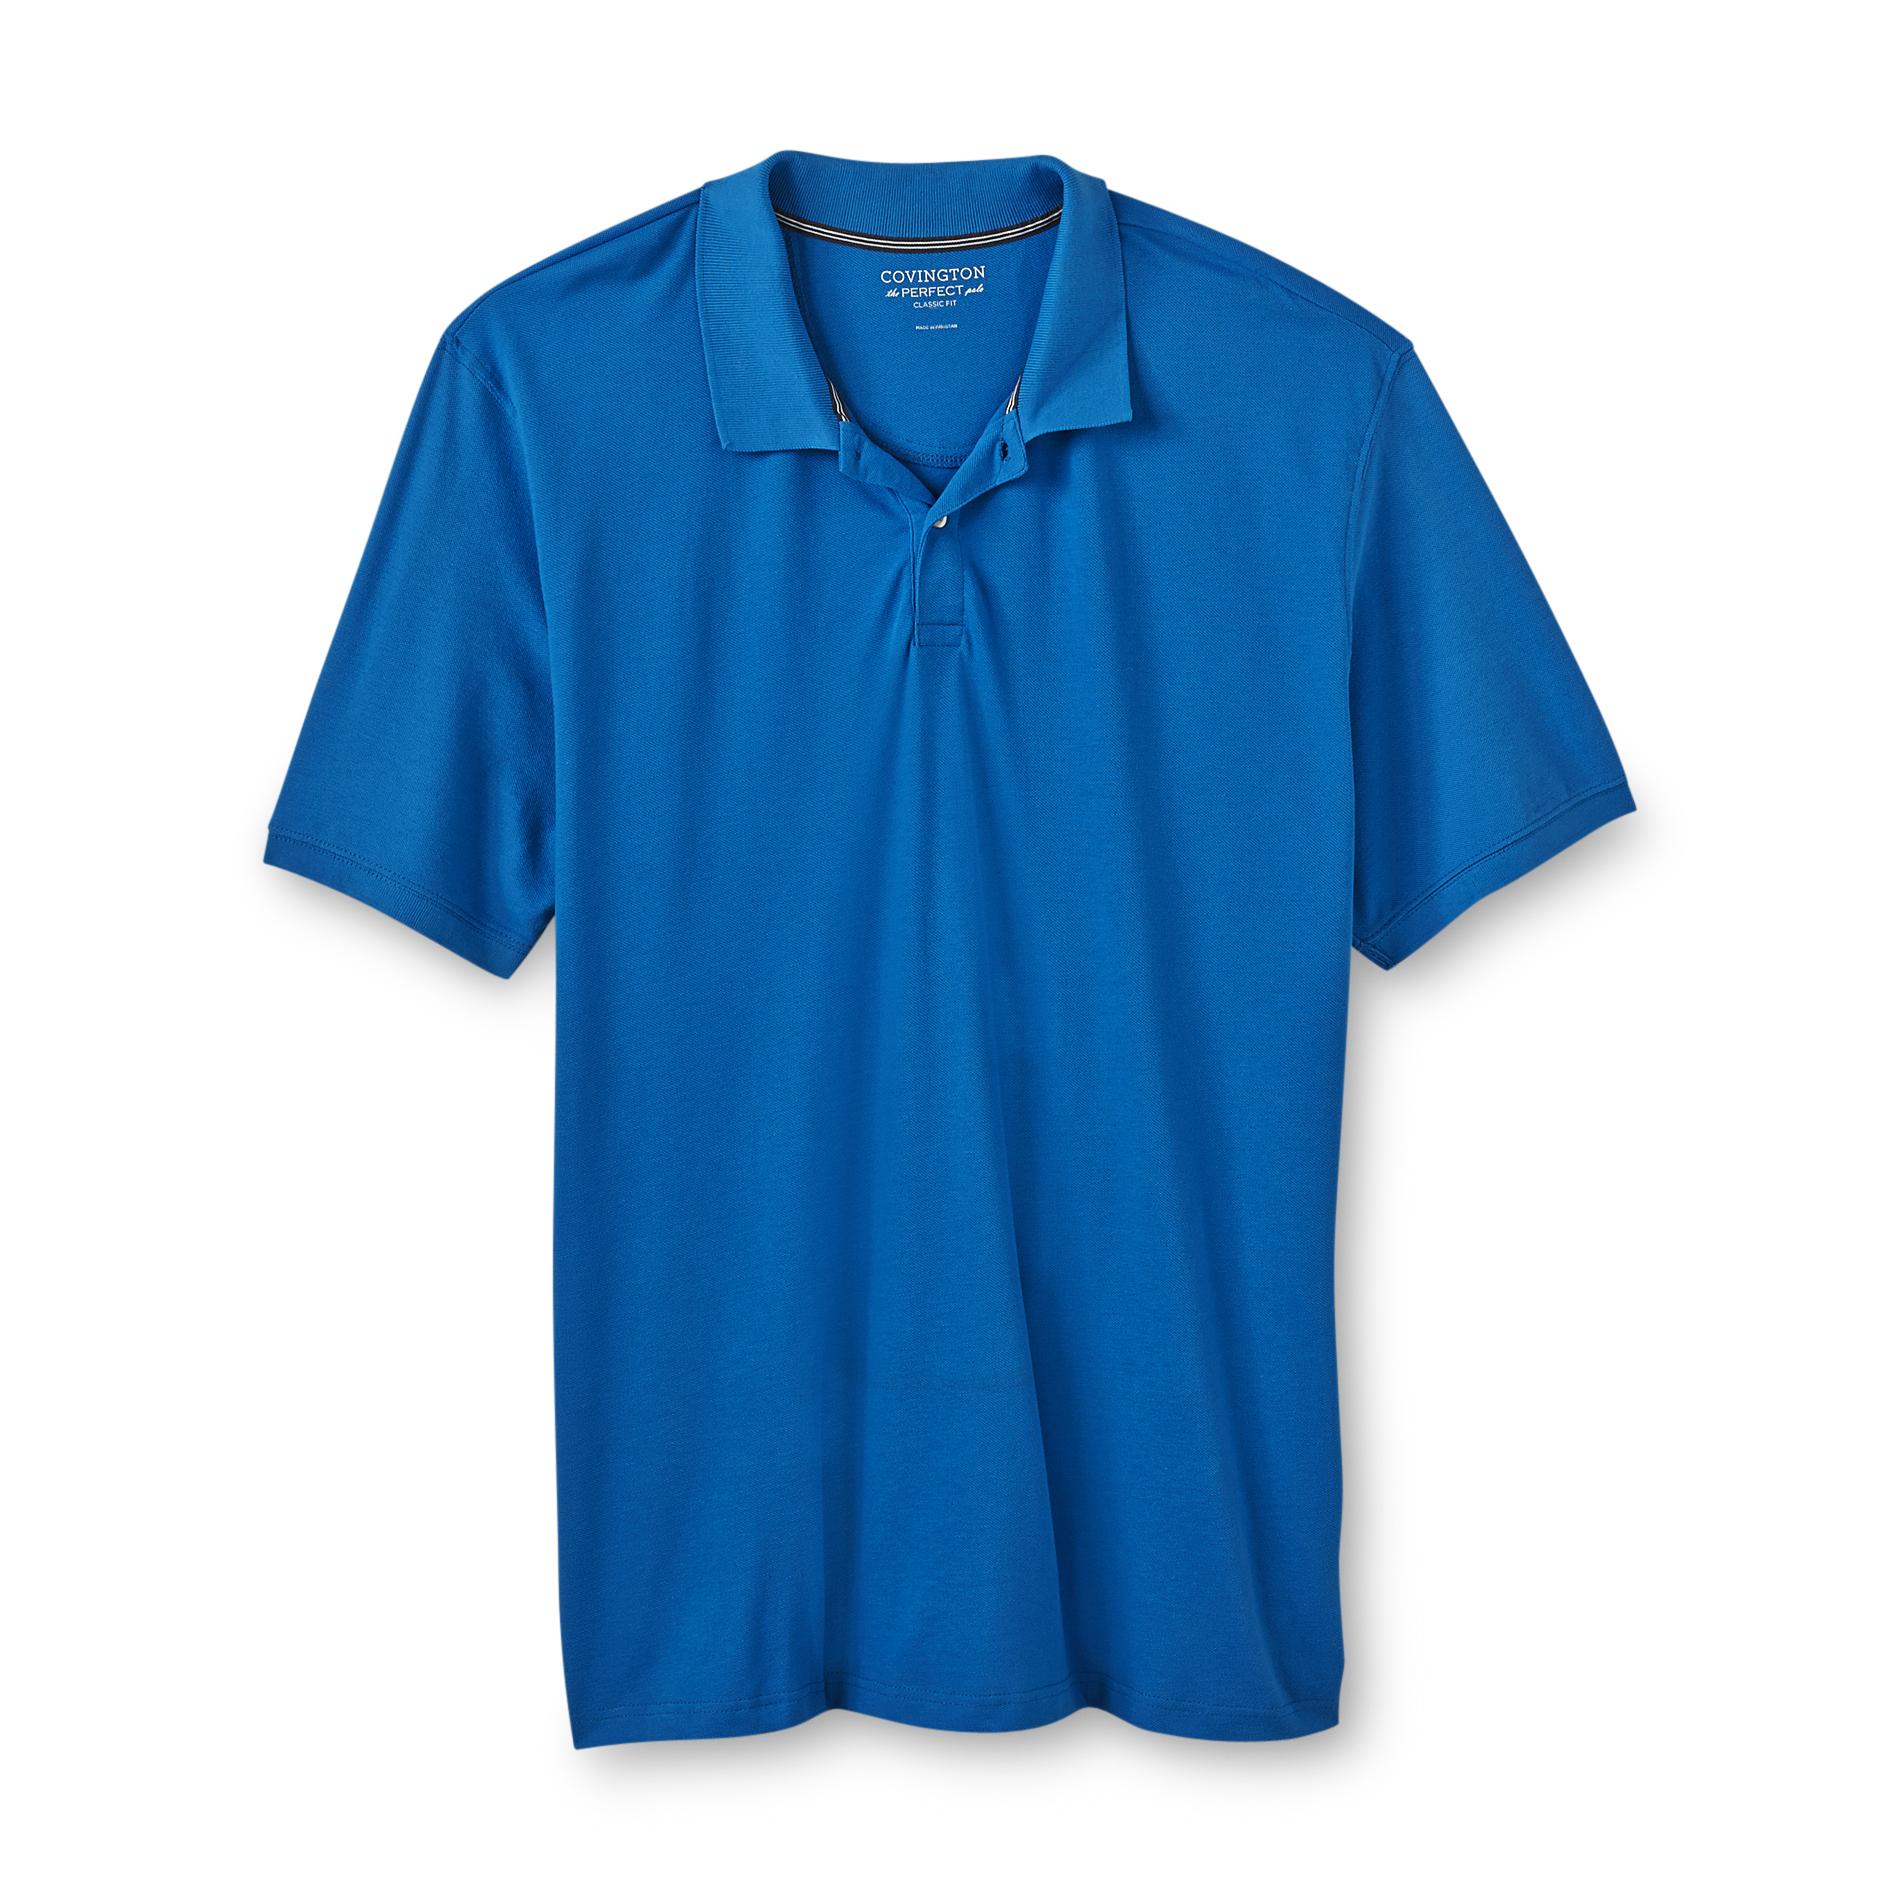 2xlt Polo Shirt | Kmart.com